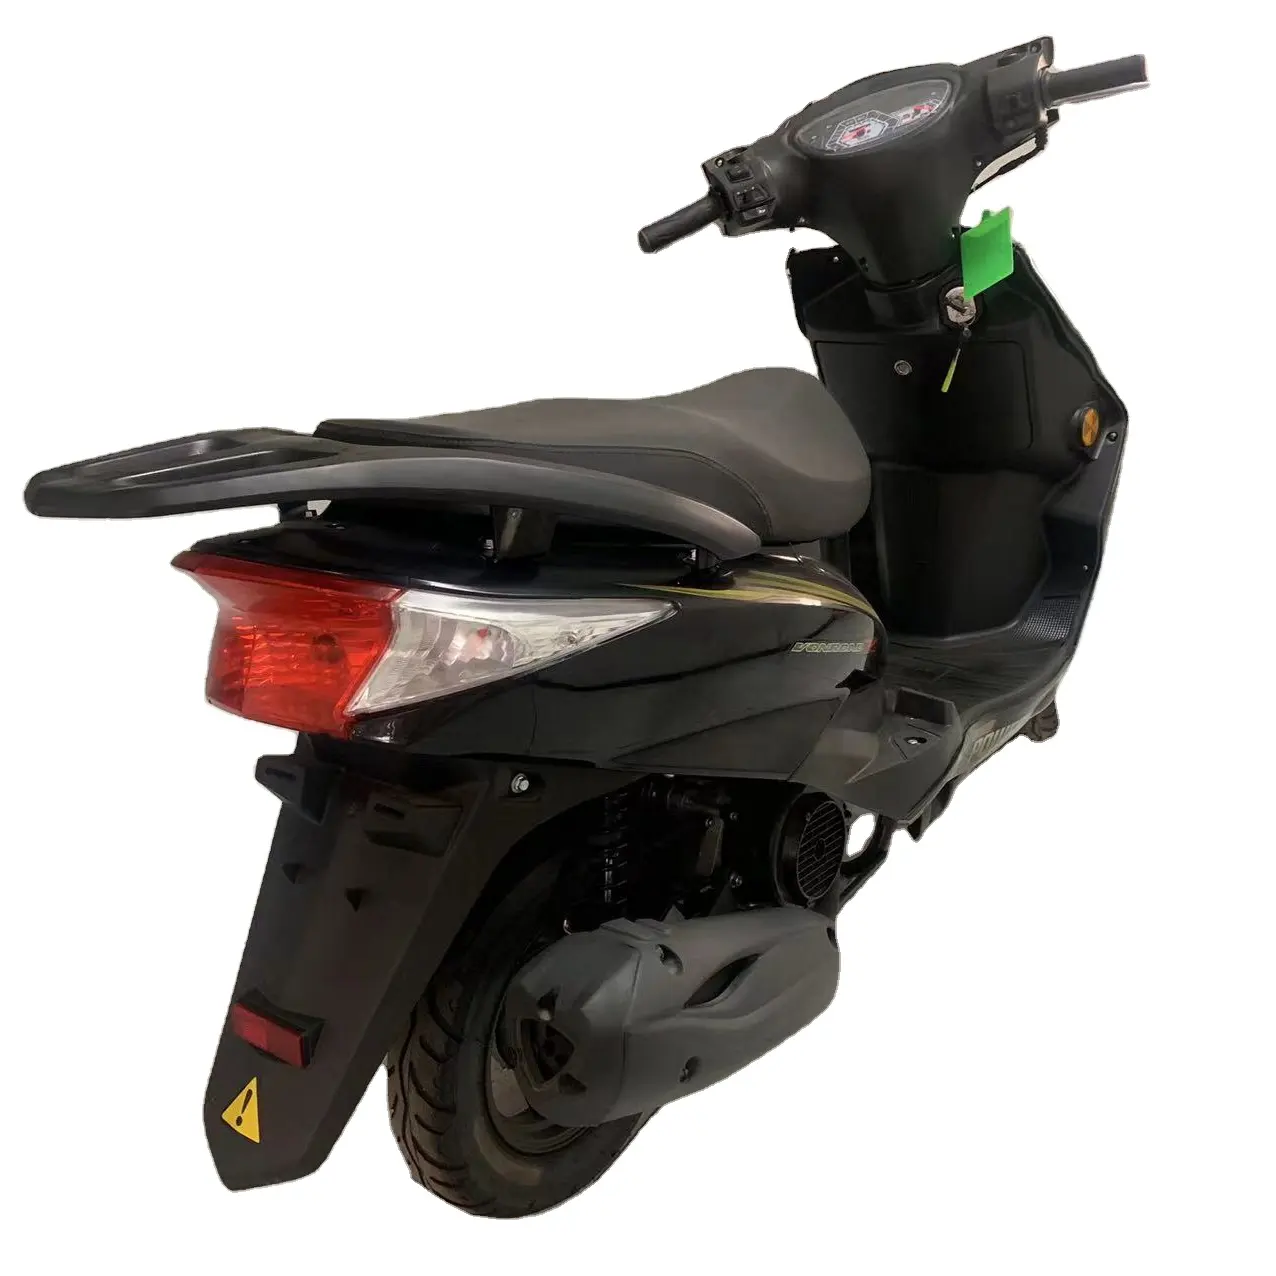 Commercio all'ingrosso bici elettrica moto Scooter 2000w moto elettrica in vendita